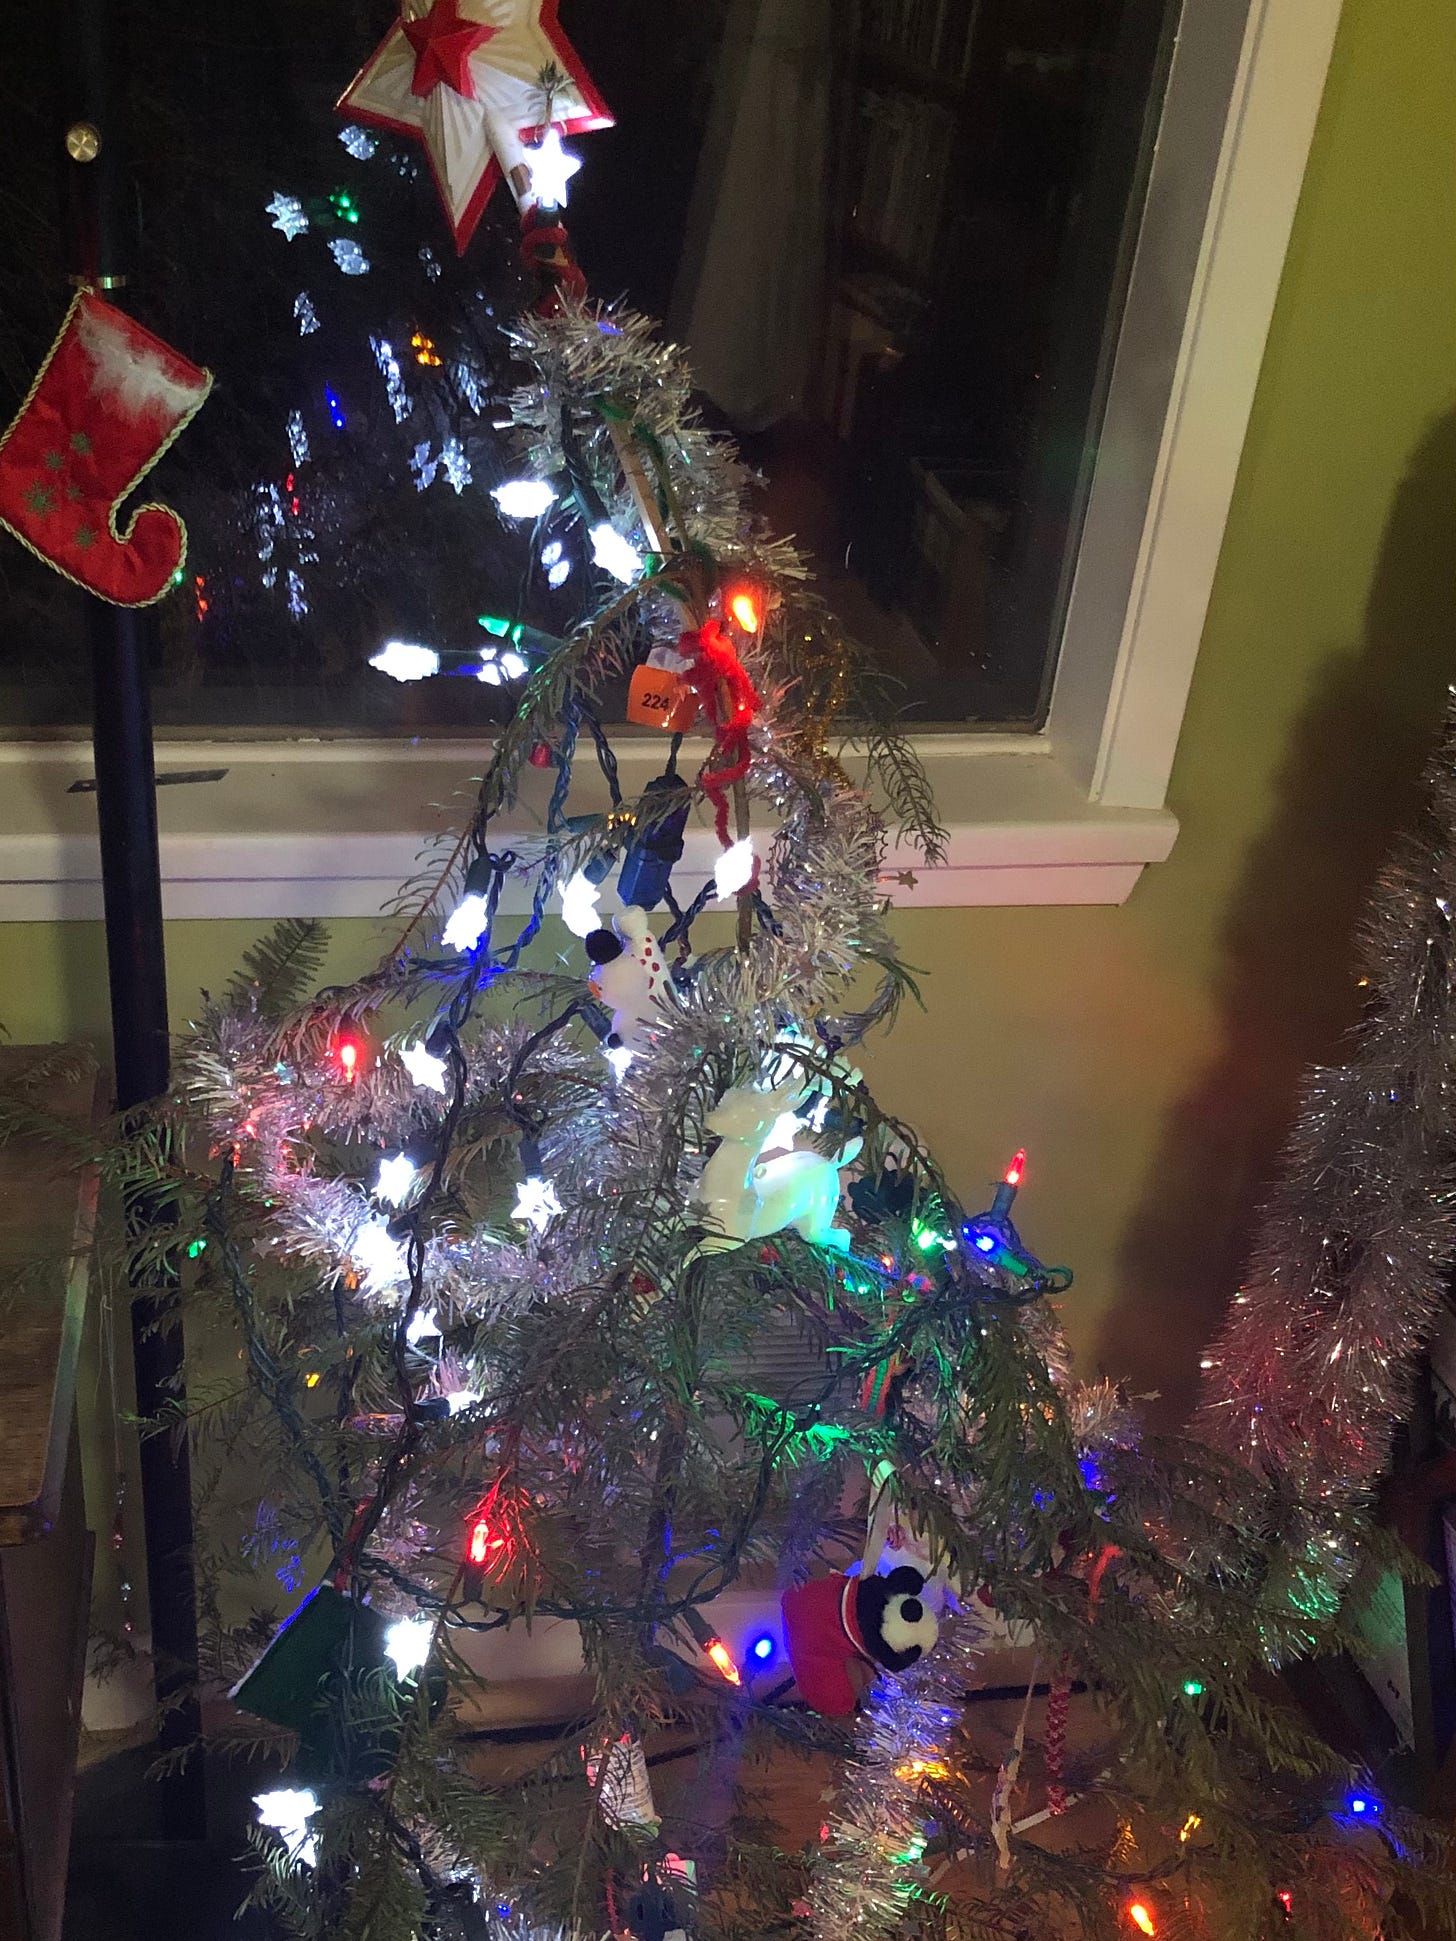 A sort of wispy wimpy Christmas tree